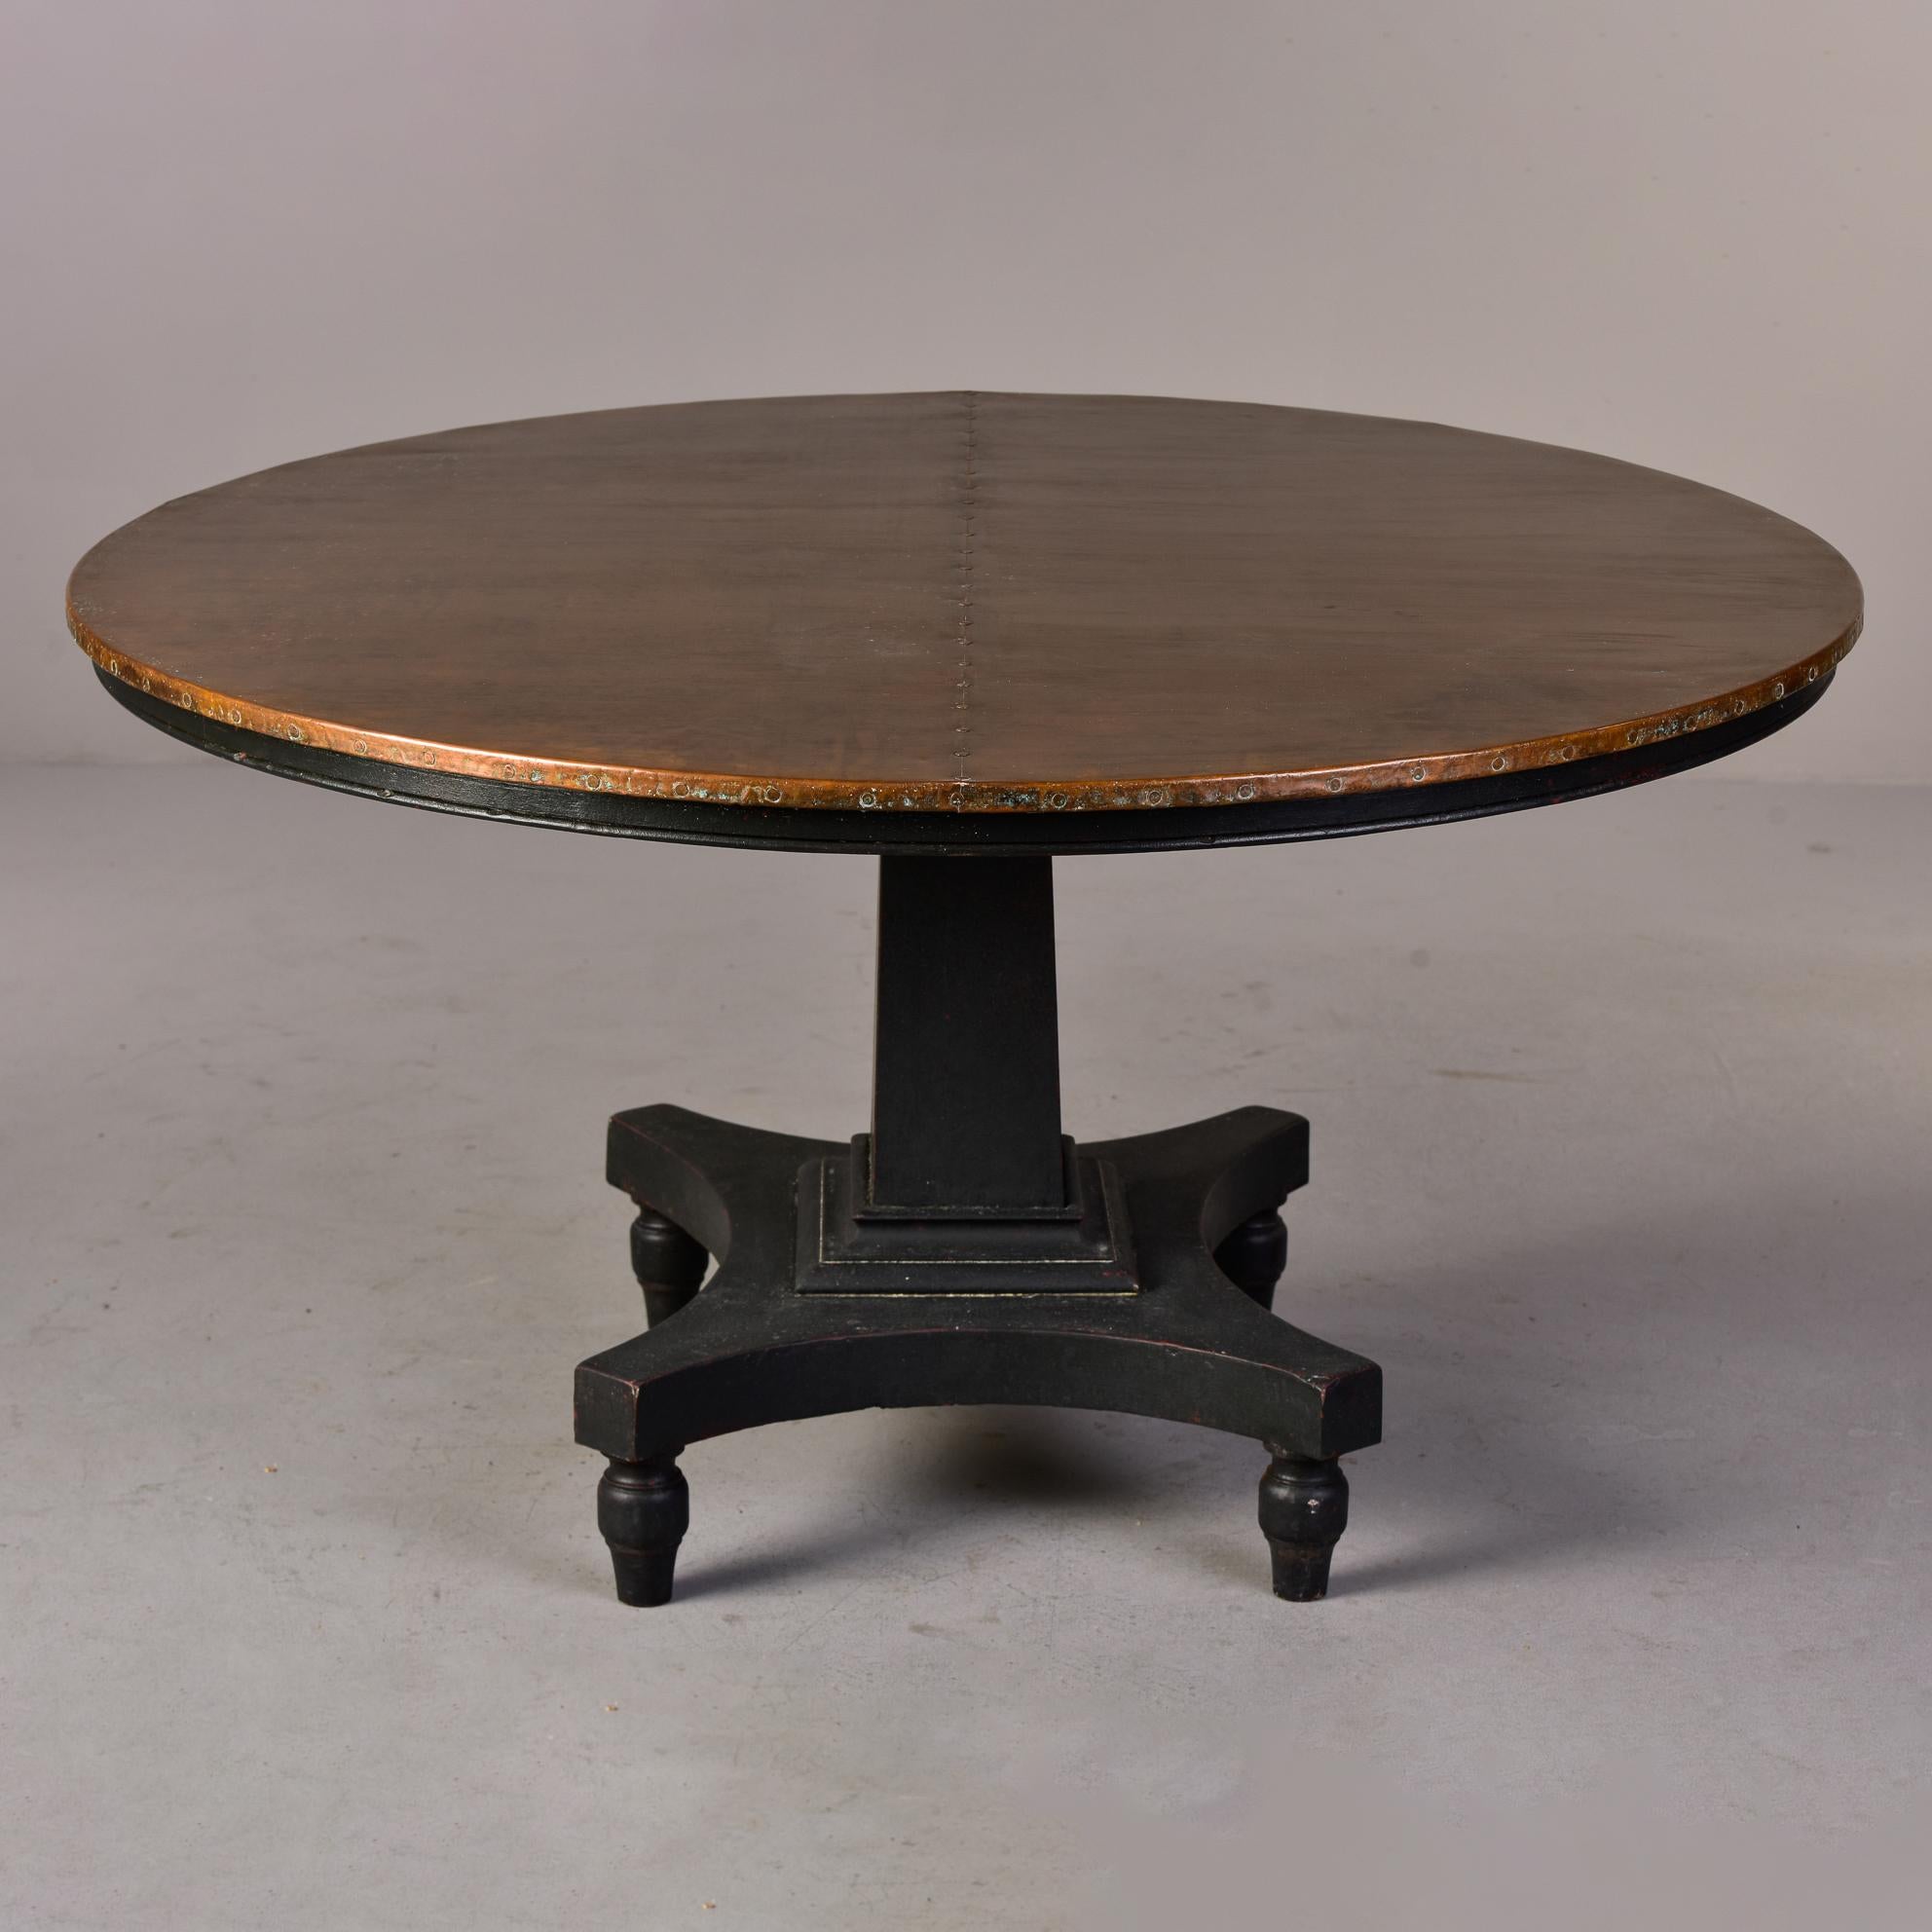 Table ronde anglaise en acajou datant de 1900, avec une base peinte en noir et un plateau en cuivre neuf. Fabricant inconnu. 

Base seulement : 28.5